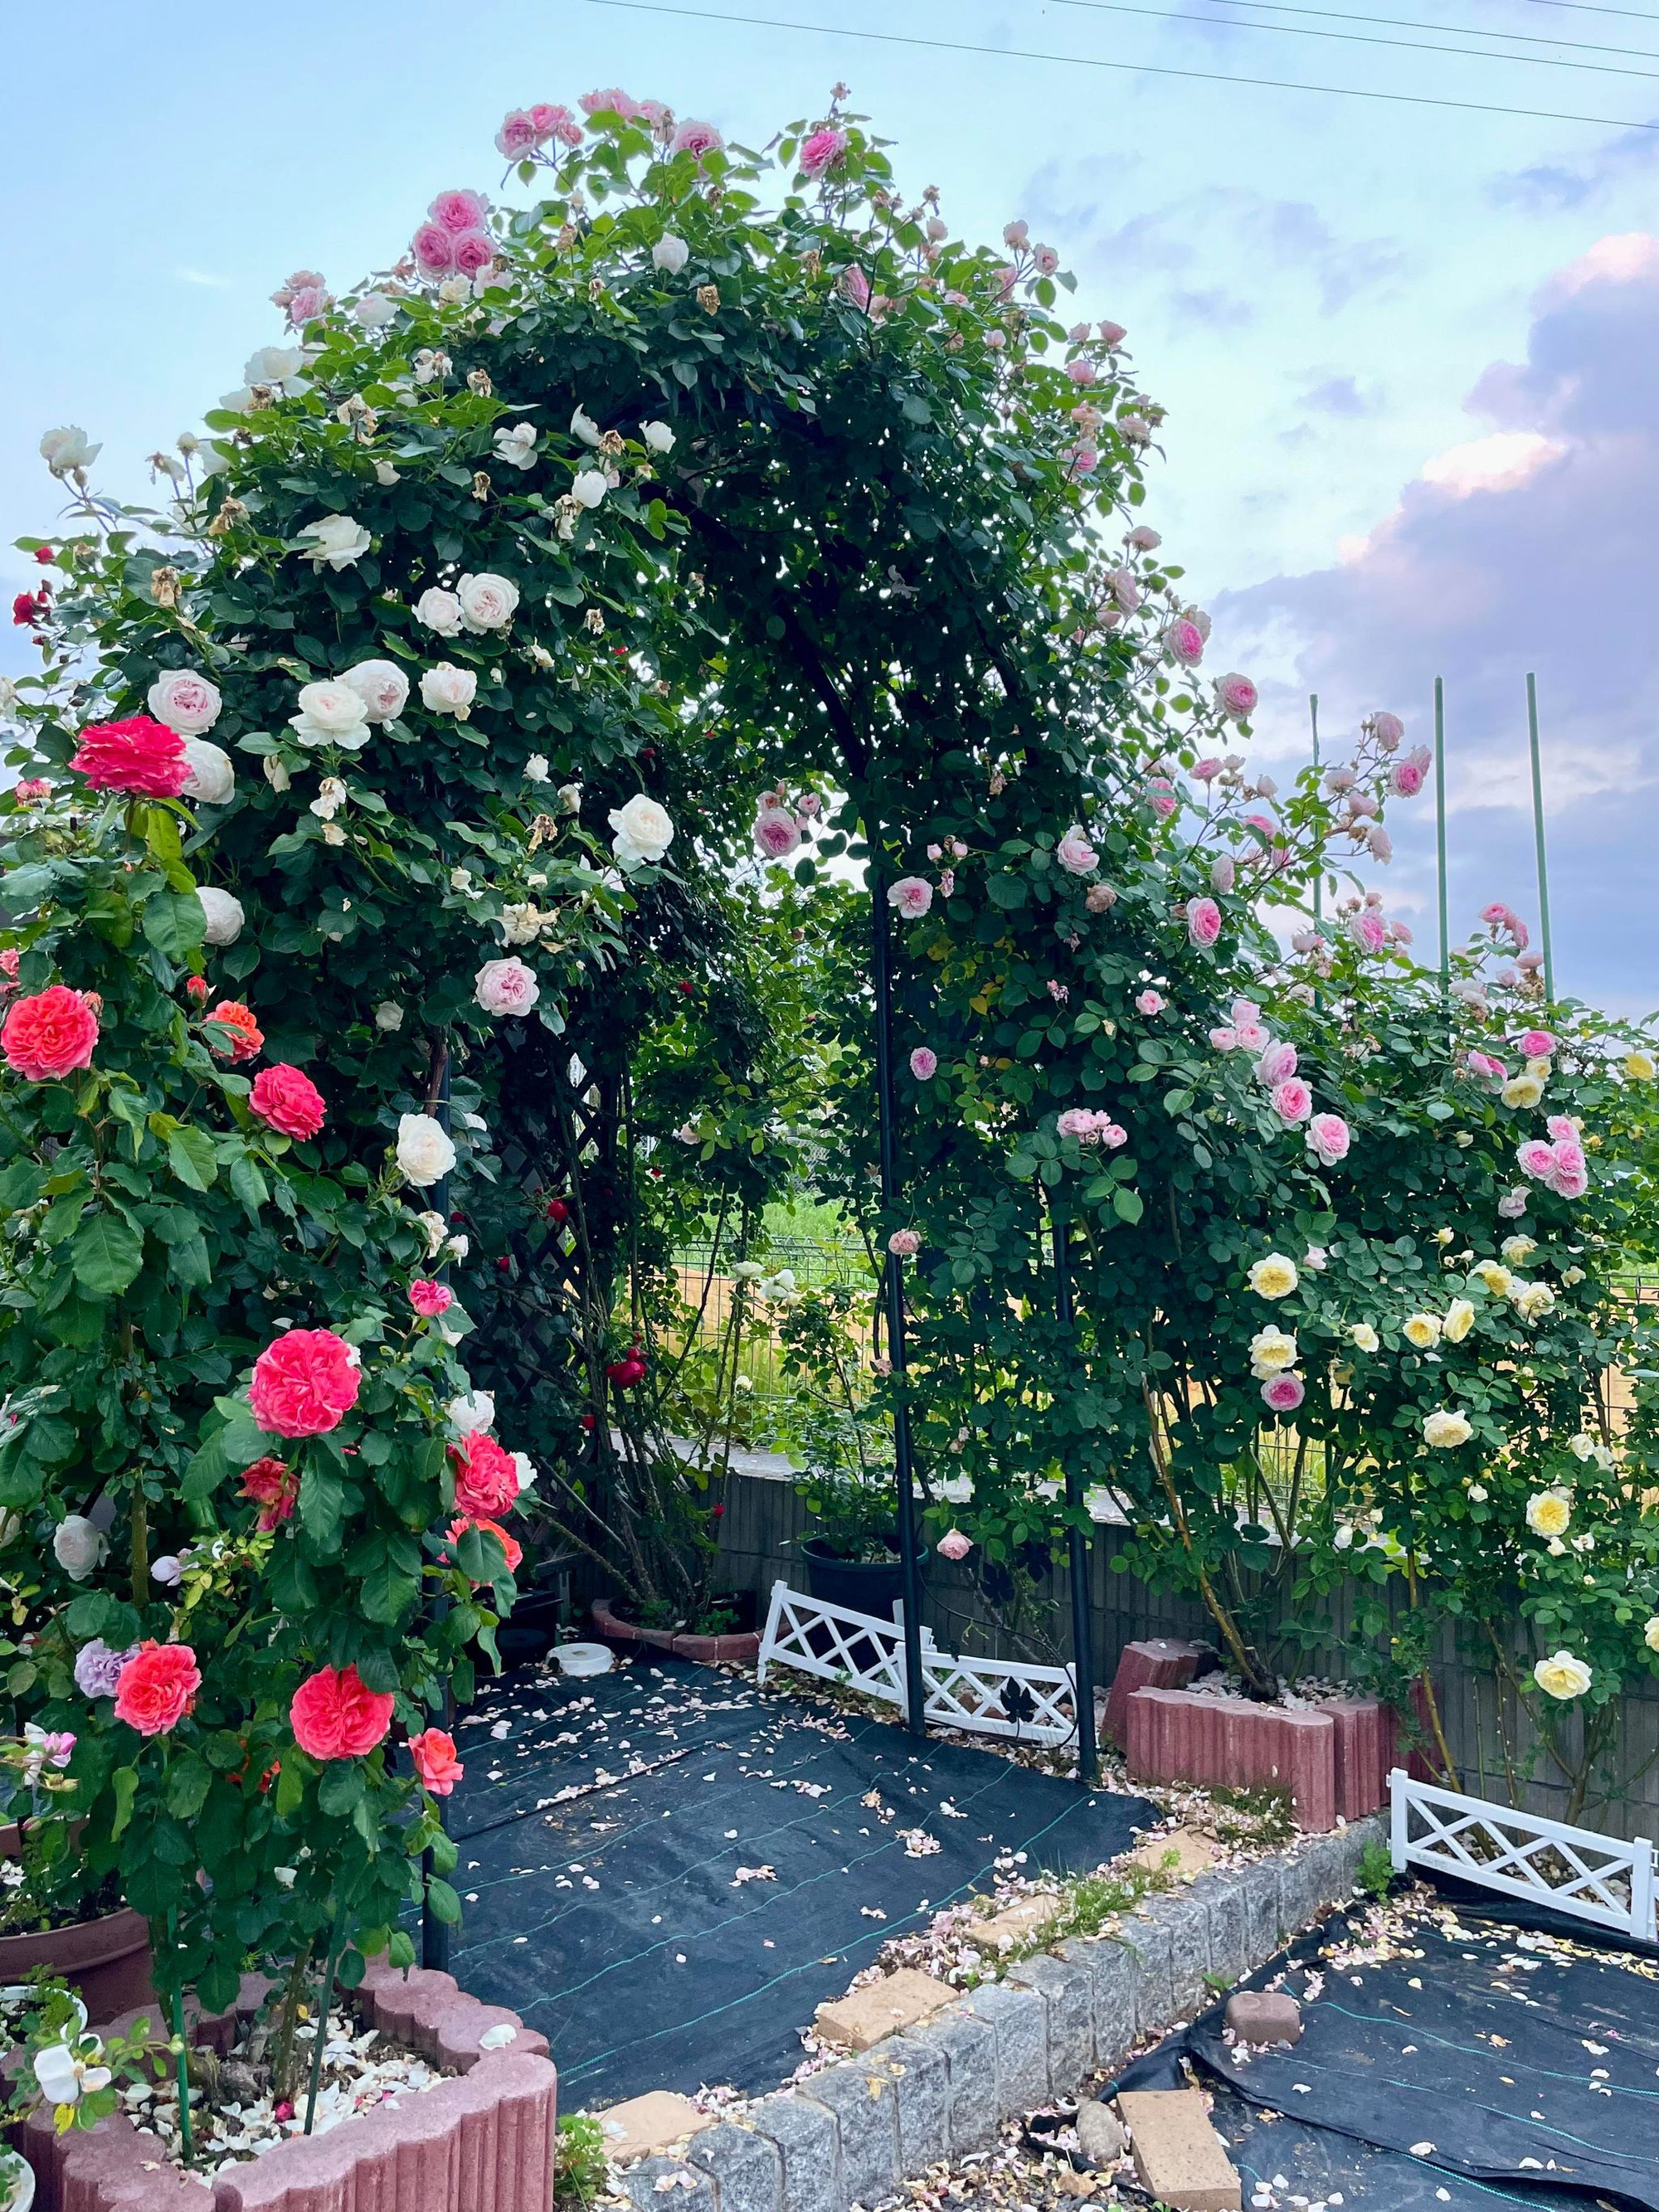 Ngôi nhà lúc nào cũng thơm nức mùi hoa vì có vườn hồng hơn 80 loại của mẹ Việt ở Nhật- Ảnh 9.